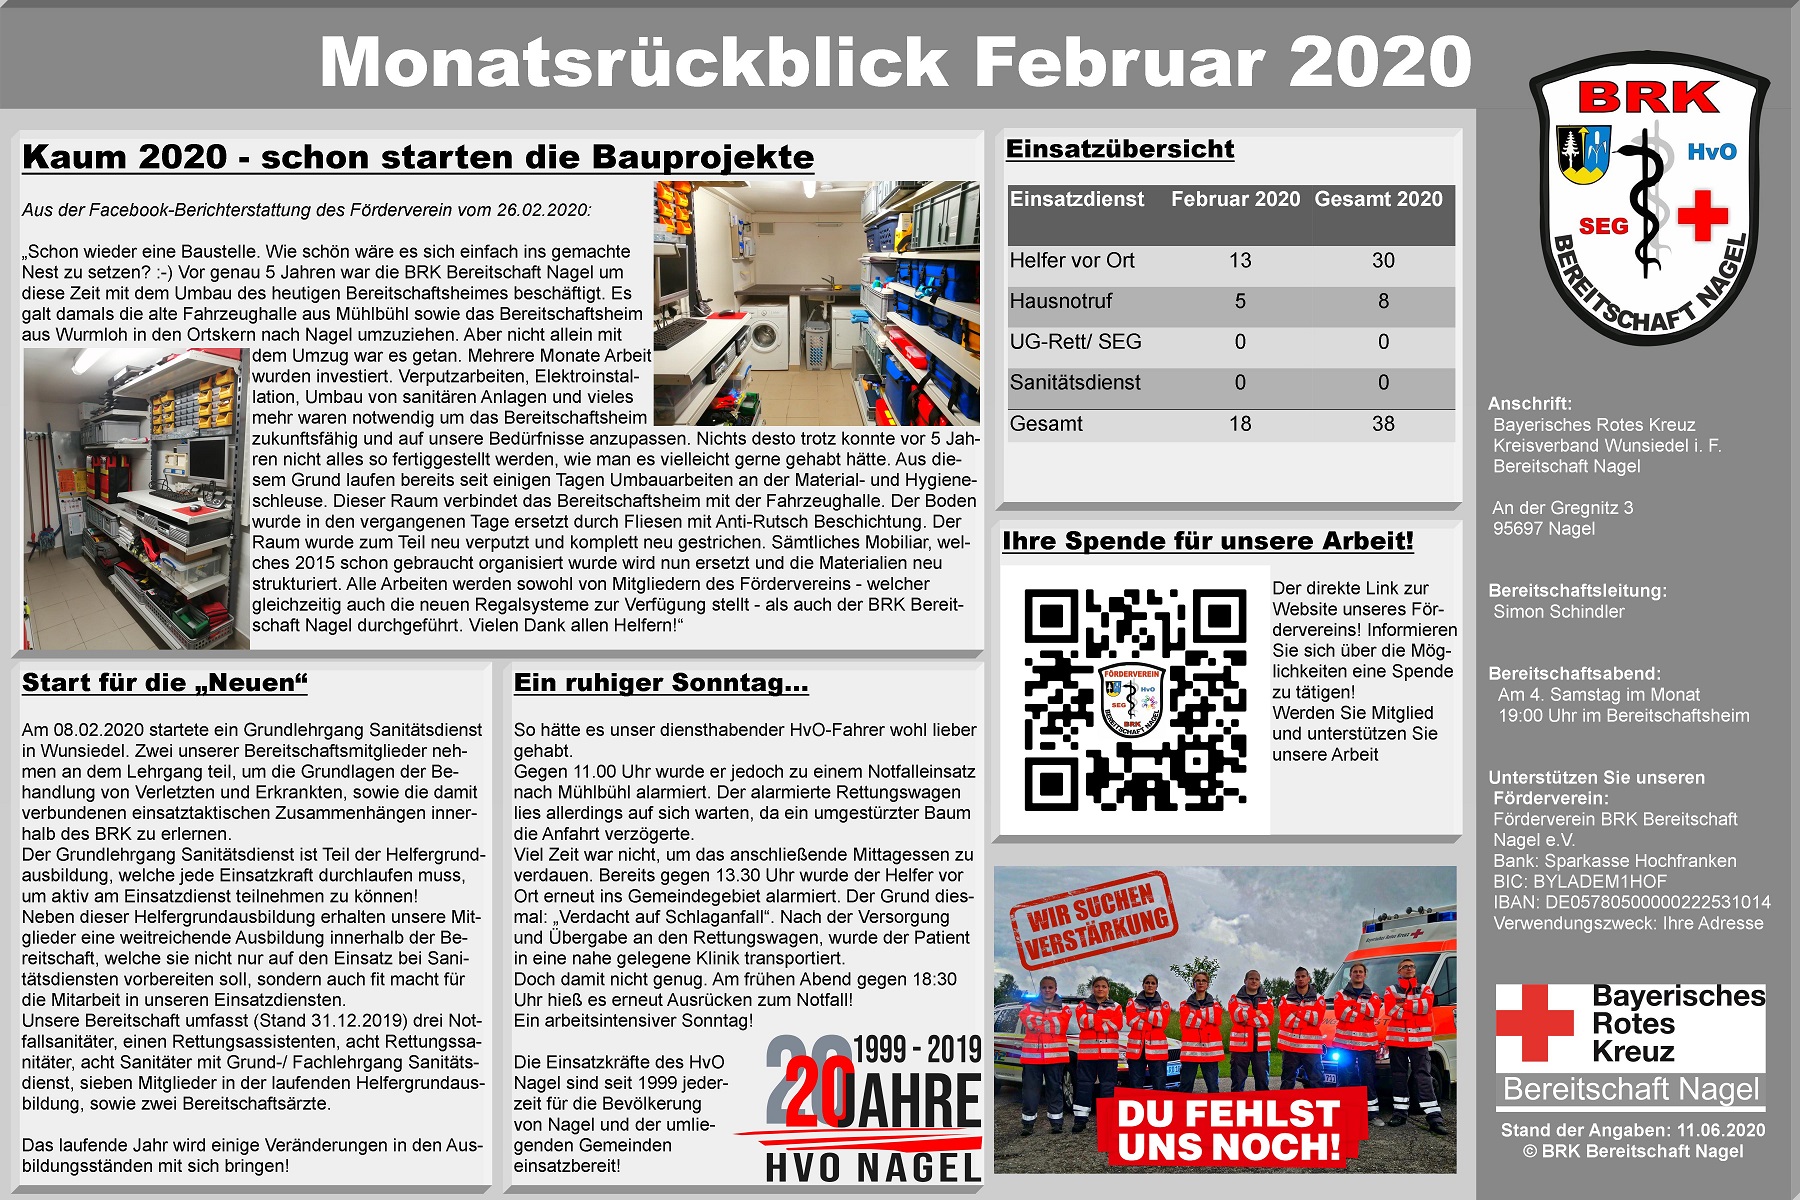 2_-_Plakat_Monatsrckblick_Februar_2020.jpg